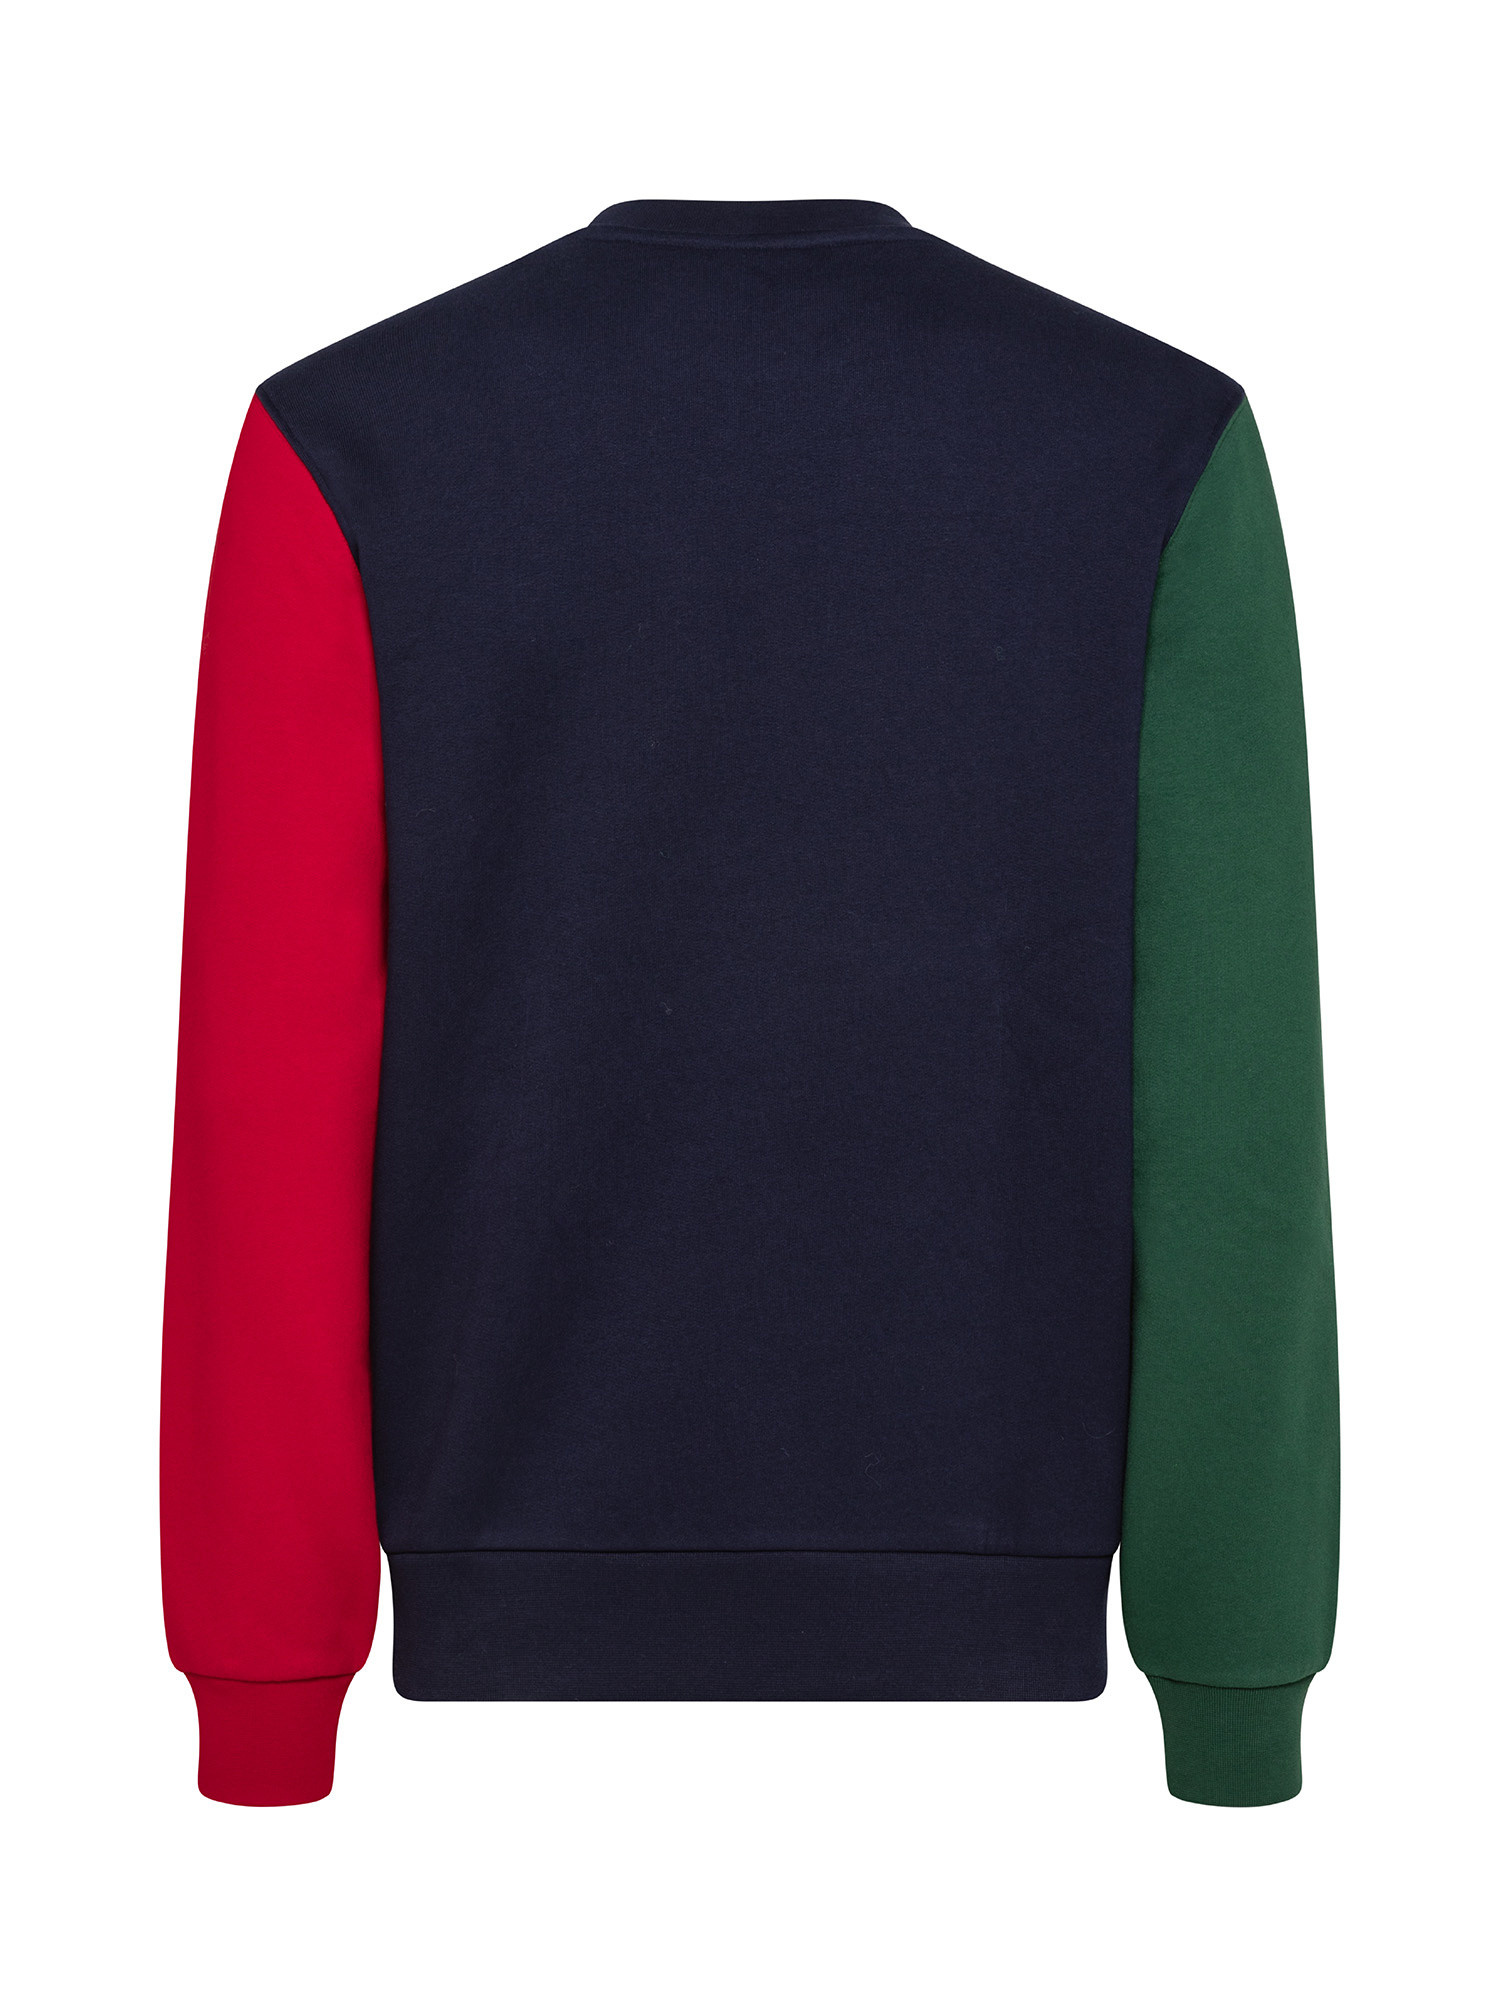 Lacoste - Lacoste brushed cotton sweatshirt, Blue, large image number 1